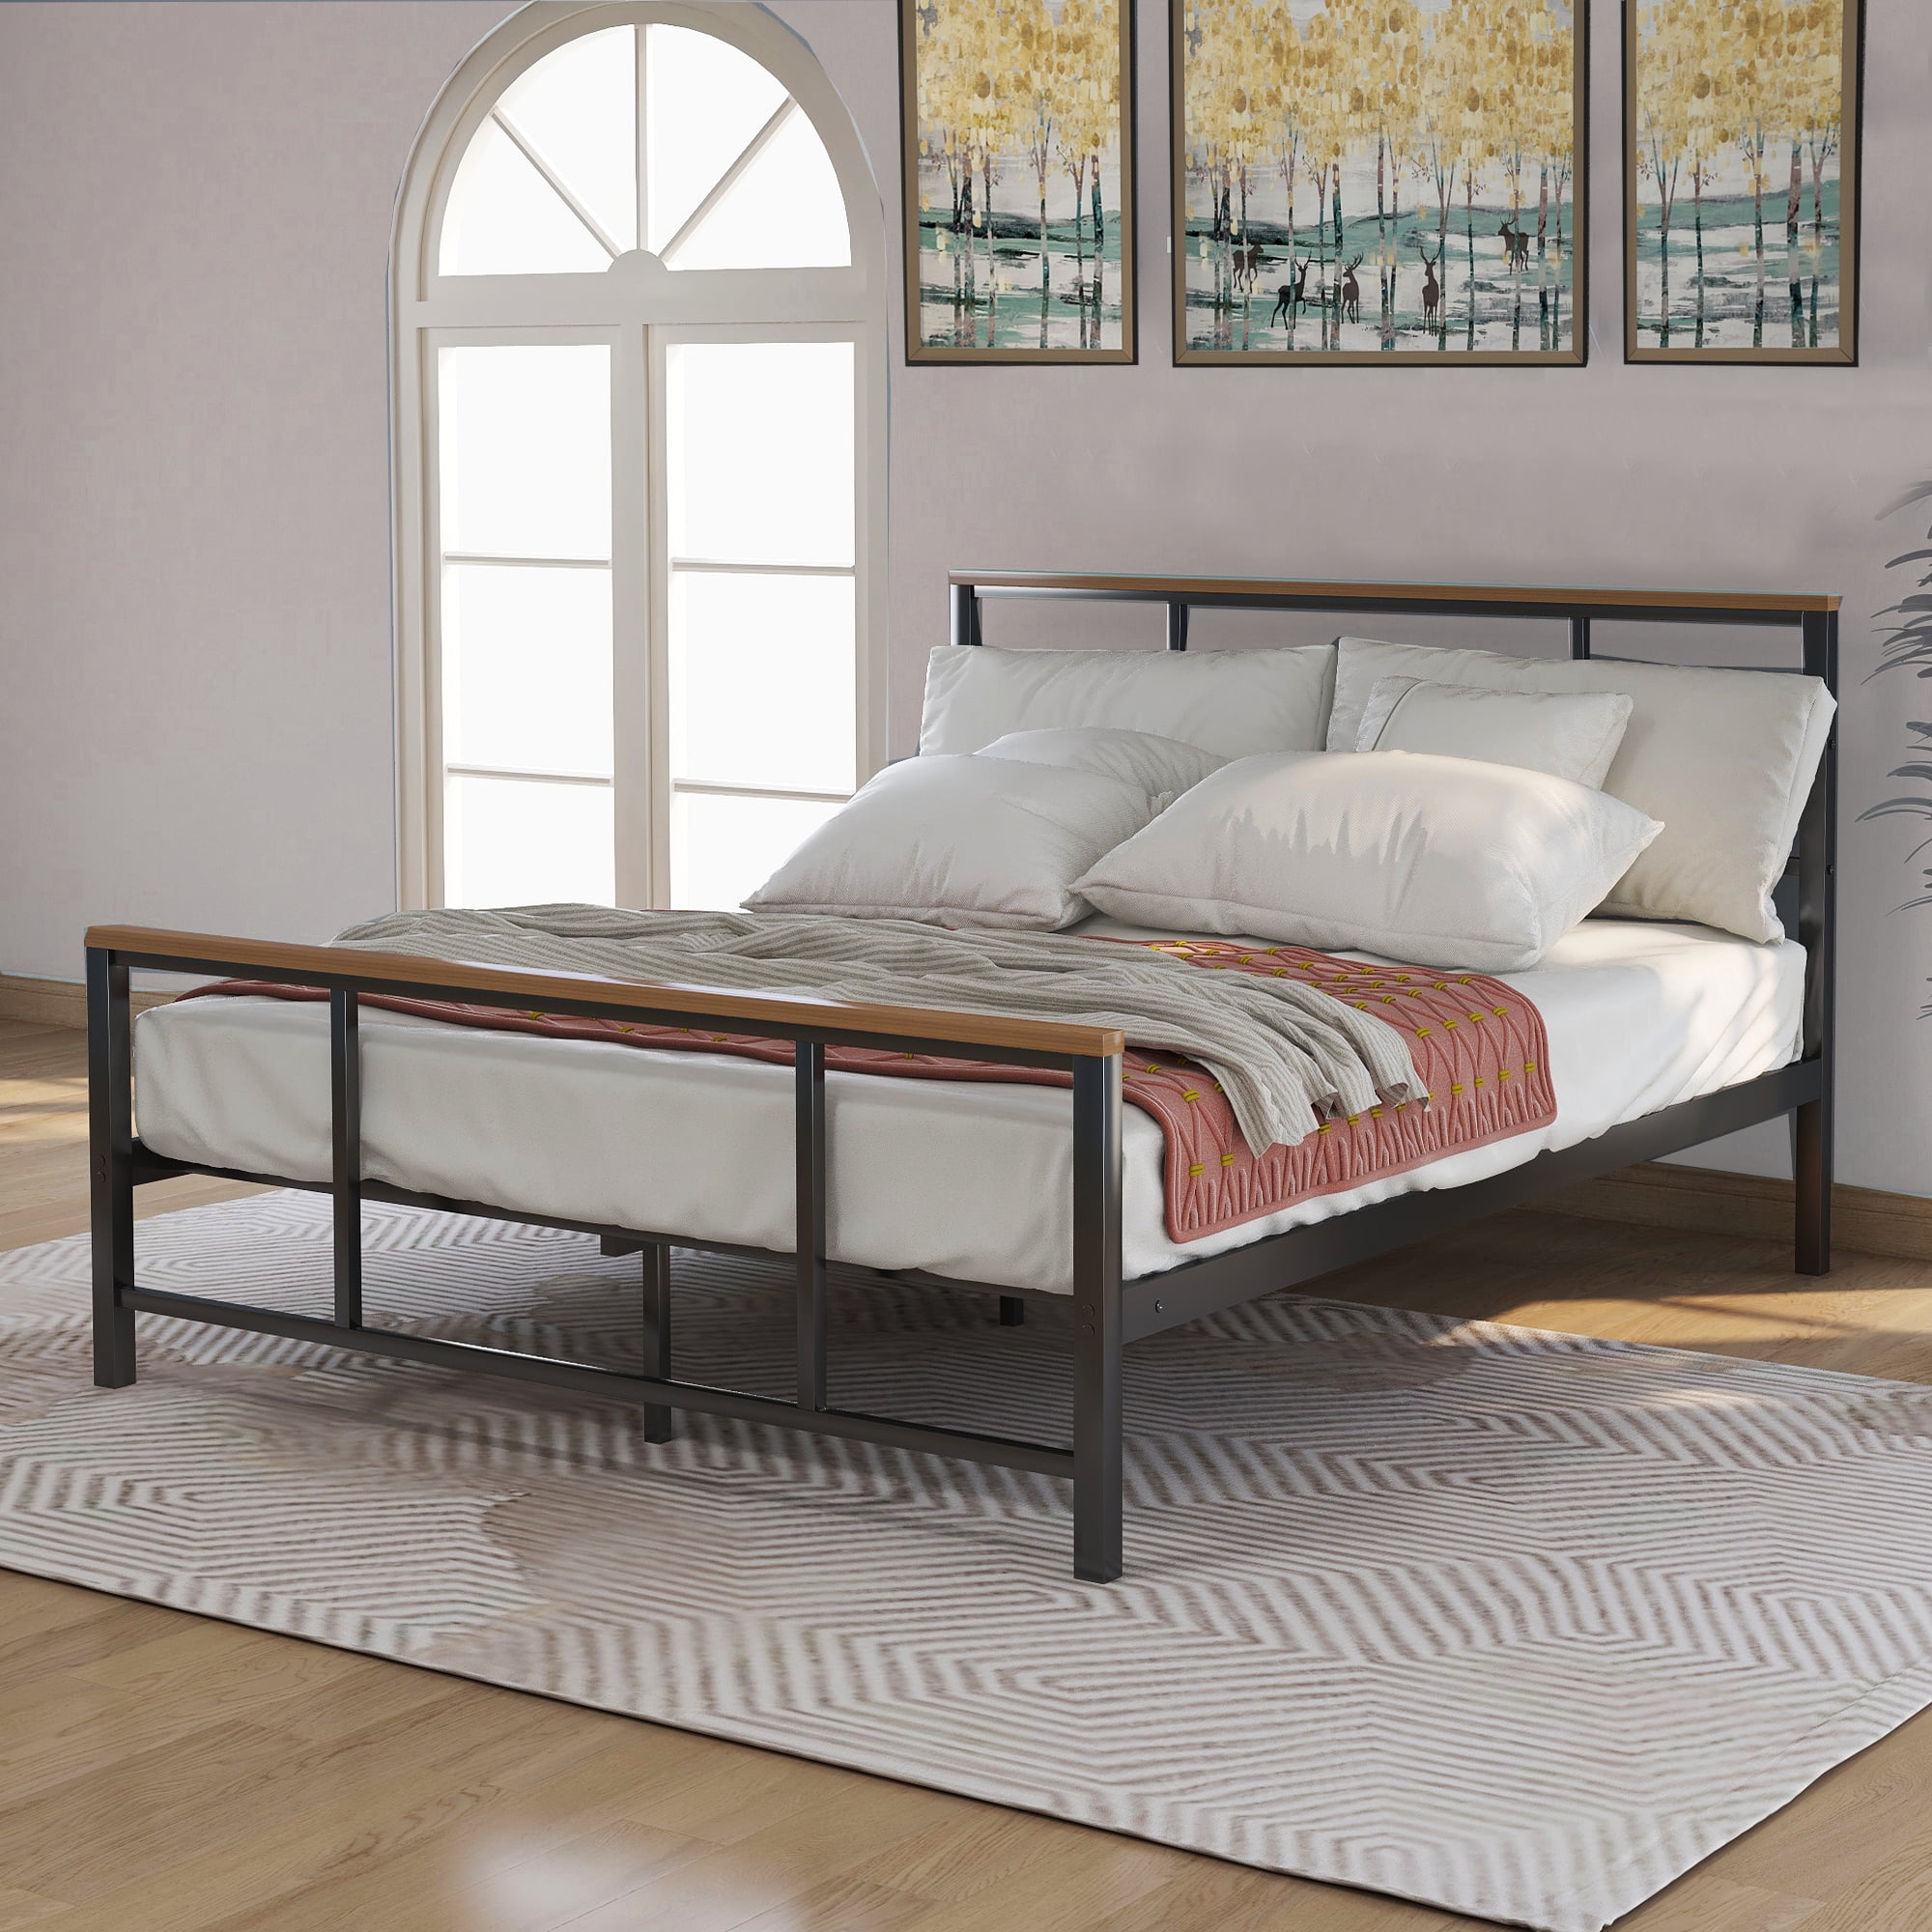 Black Full Size Metal Bed Frame Wood Headboard&Slats Platform Bedroom Furniture 